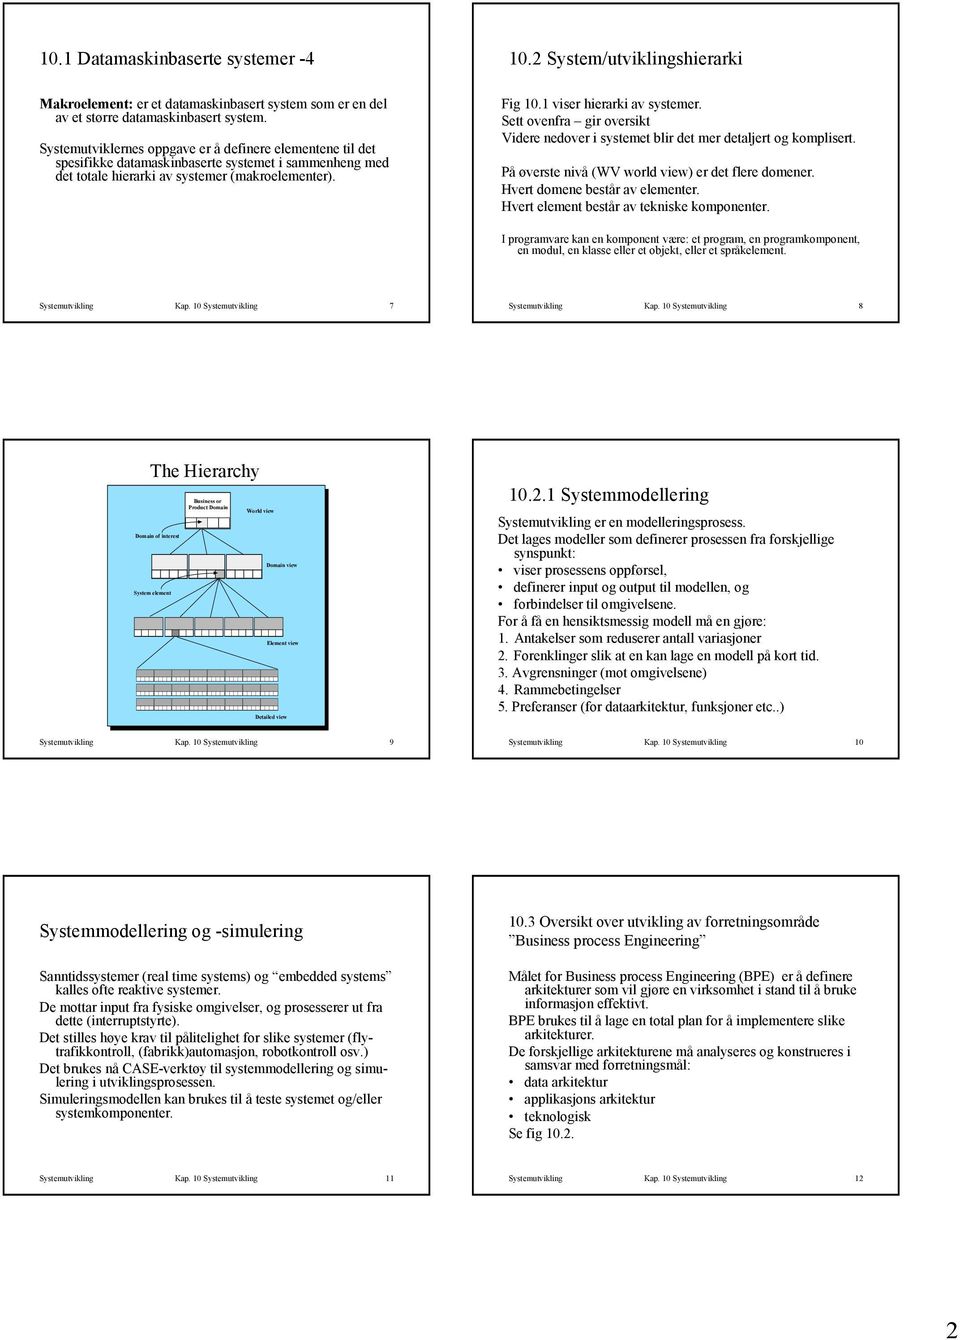 2 System/utviklingshierarki Fig 10.1 viser hierarki av systemer. Sett ovenfra gir oversikt Videre nedover i systemet blir det mer detaljert og komplisert.